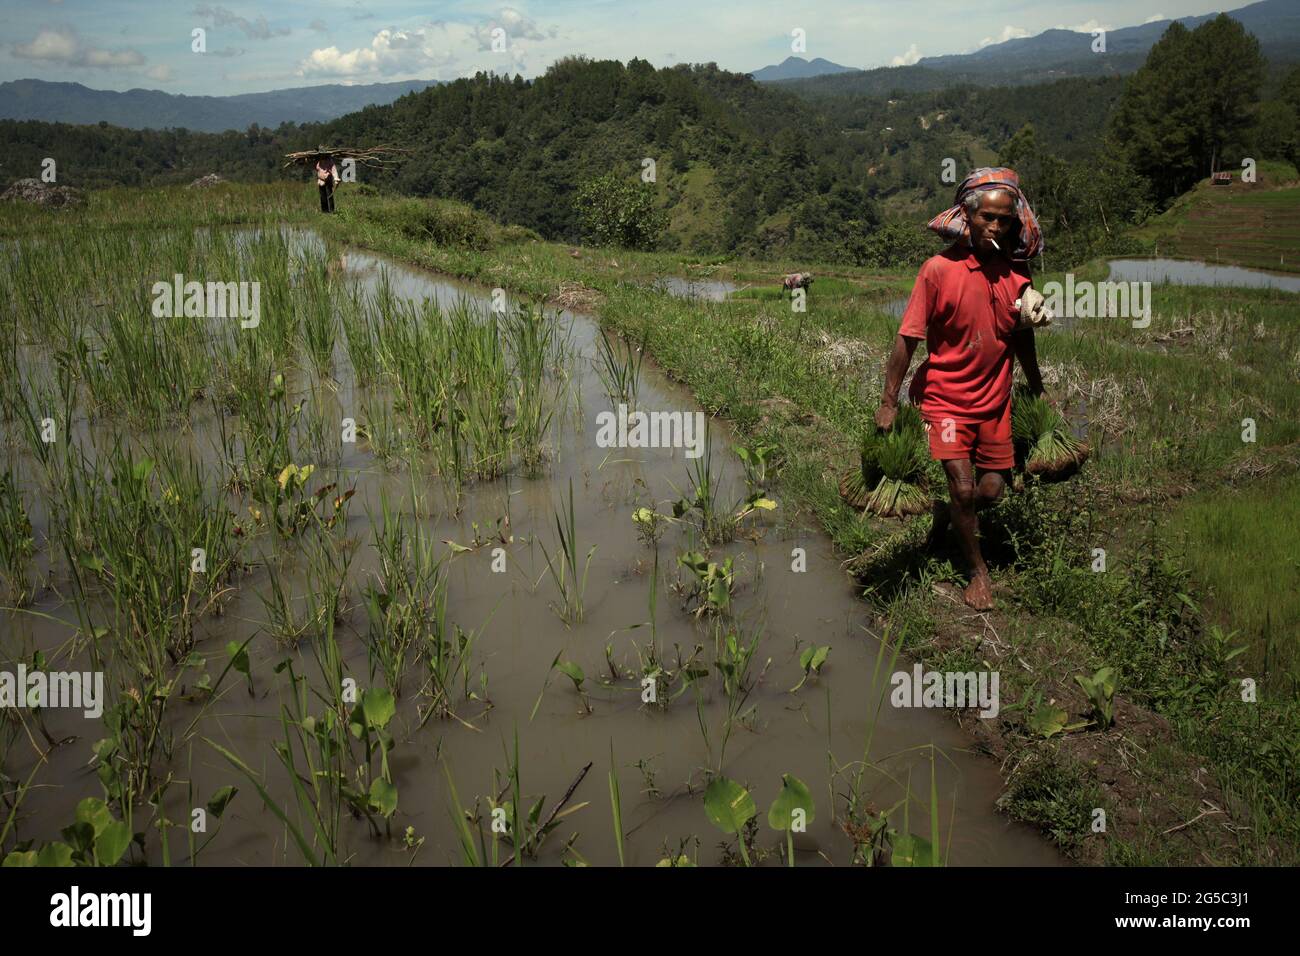 Ein Reisbauer, der Jungreispflanzen trägt und an einem hellen Tag auf einem Damm durch Reisfelder geht, in der Nähe von Kurra, Tana Toraja, Süd-Sulawesi, Indonesien. Höhere Temperaturen, die durch die globale Erwärmung verursacht werden, dürften die Reiserträge in Indonesien verringern. Veränderungen der El-Nino-Muster, die den Beginn und die Dauer der Regenzeit beeinflussen, bringen auch die landwirtschaftliche Produktion in einen anfälligen Status. Die Entwicklung neuer oder verbesserter lokaler Reissorten, die widerstandsfähiger sind - wie jüngste Studien in anderen Ländern - könnte einer der Schlüssel zur Milderung sein. Stockfoto